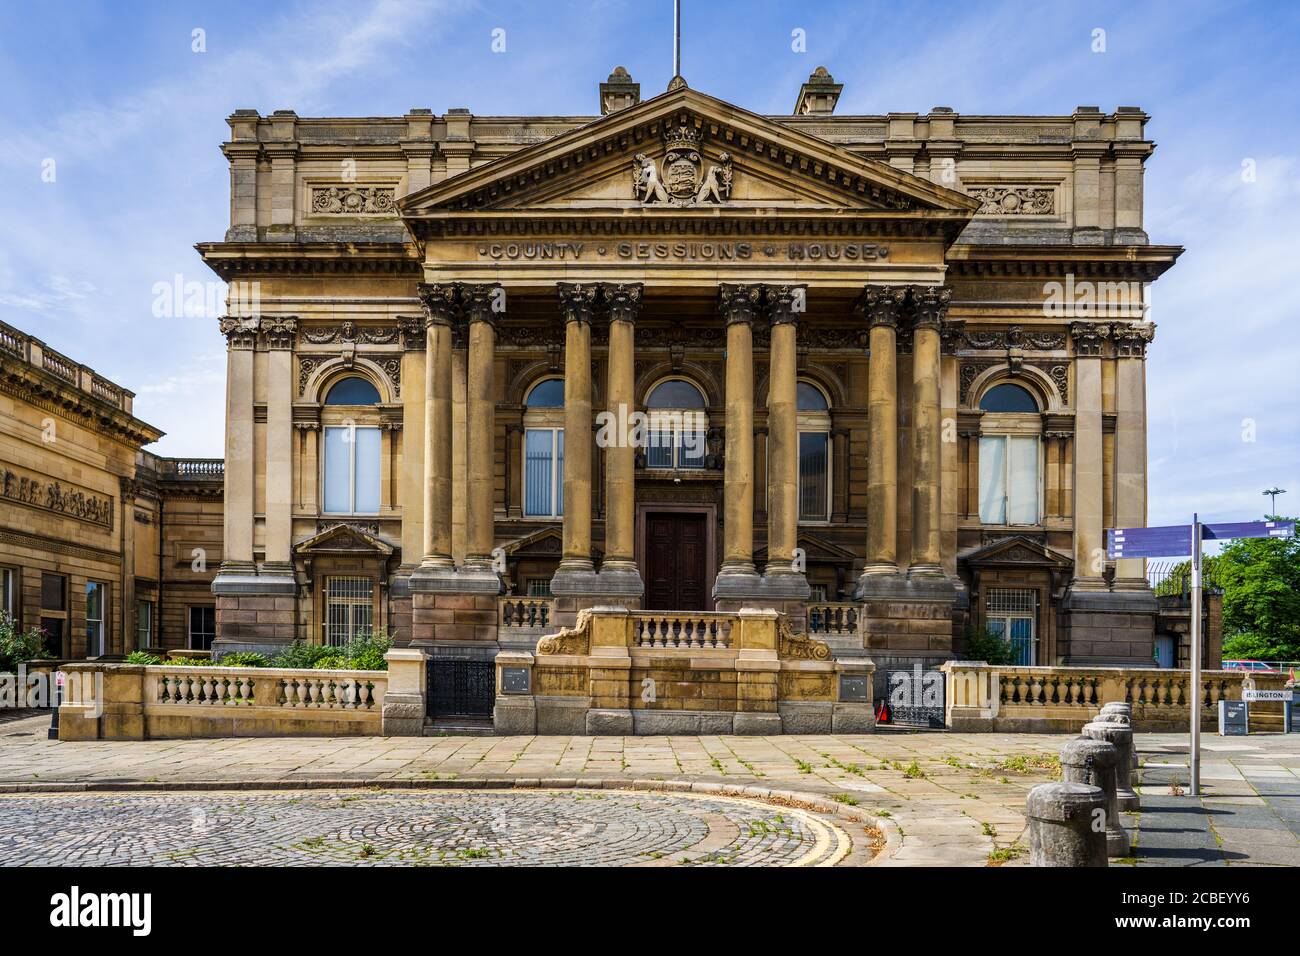 Liverpool County Sessions House, Islington, Liverpool. Completato nel 1884 come tribunale della contea locale, gli architetti F & G Holme. Chiuso 1984, grado II*. Foto Stock